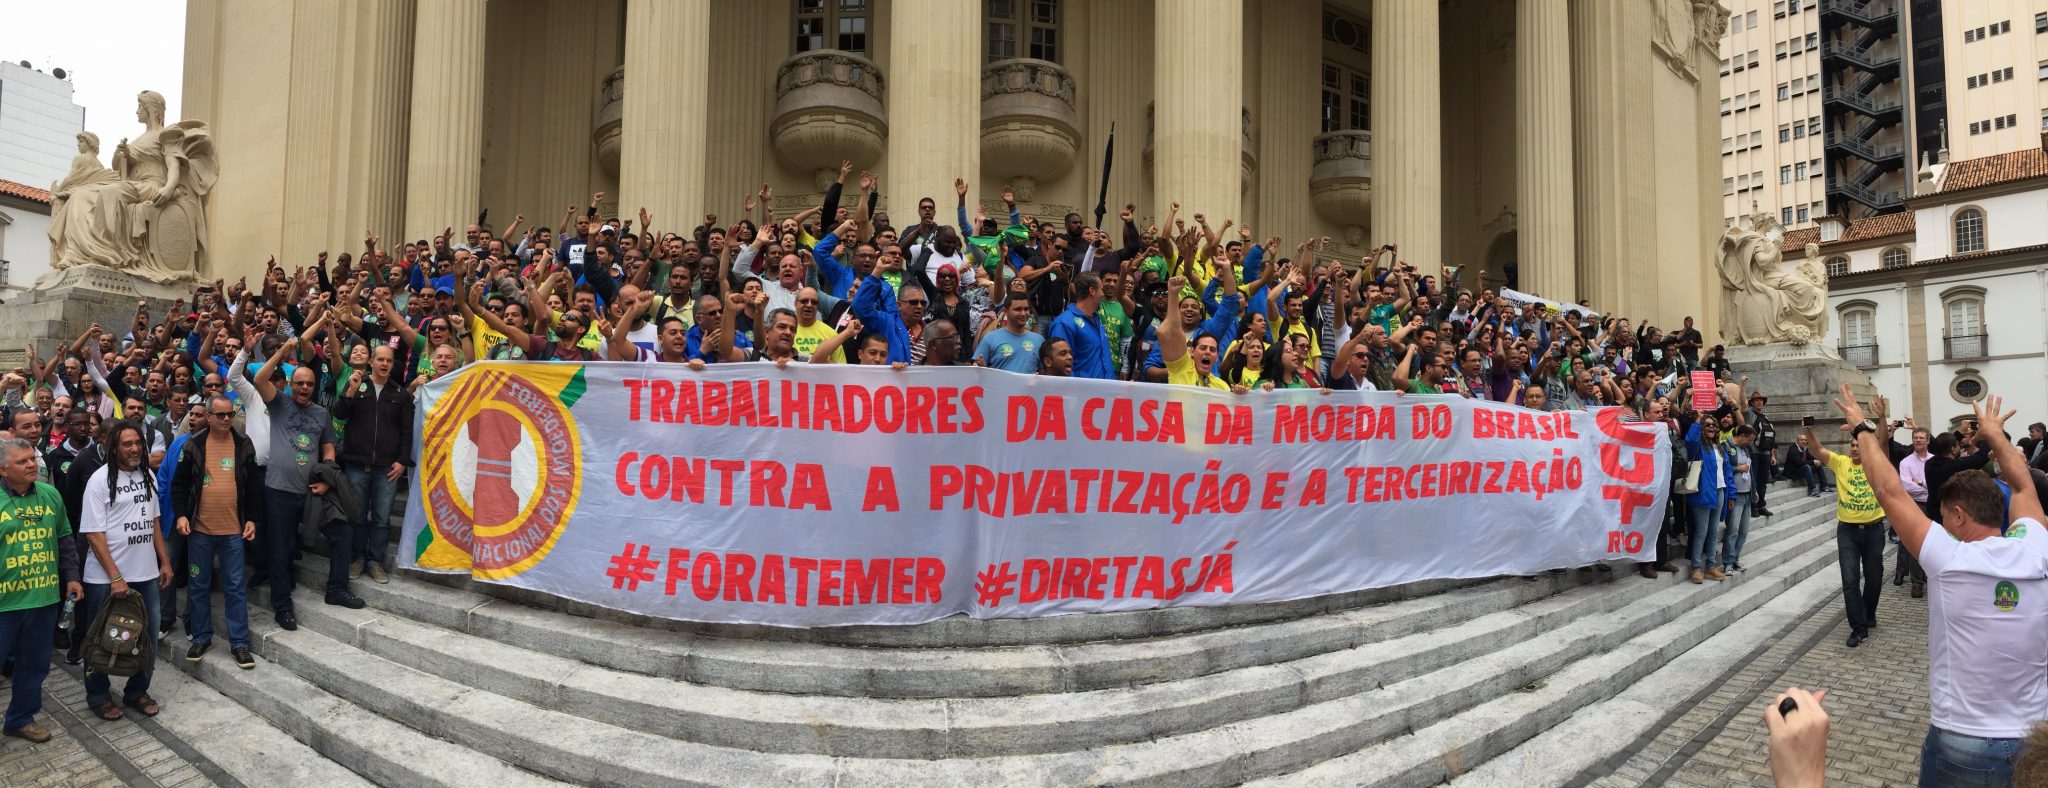 Audiência pública na ALERJ contra as privatizações